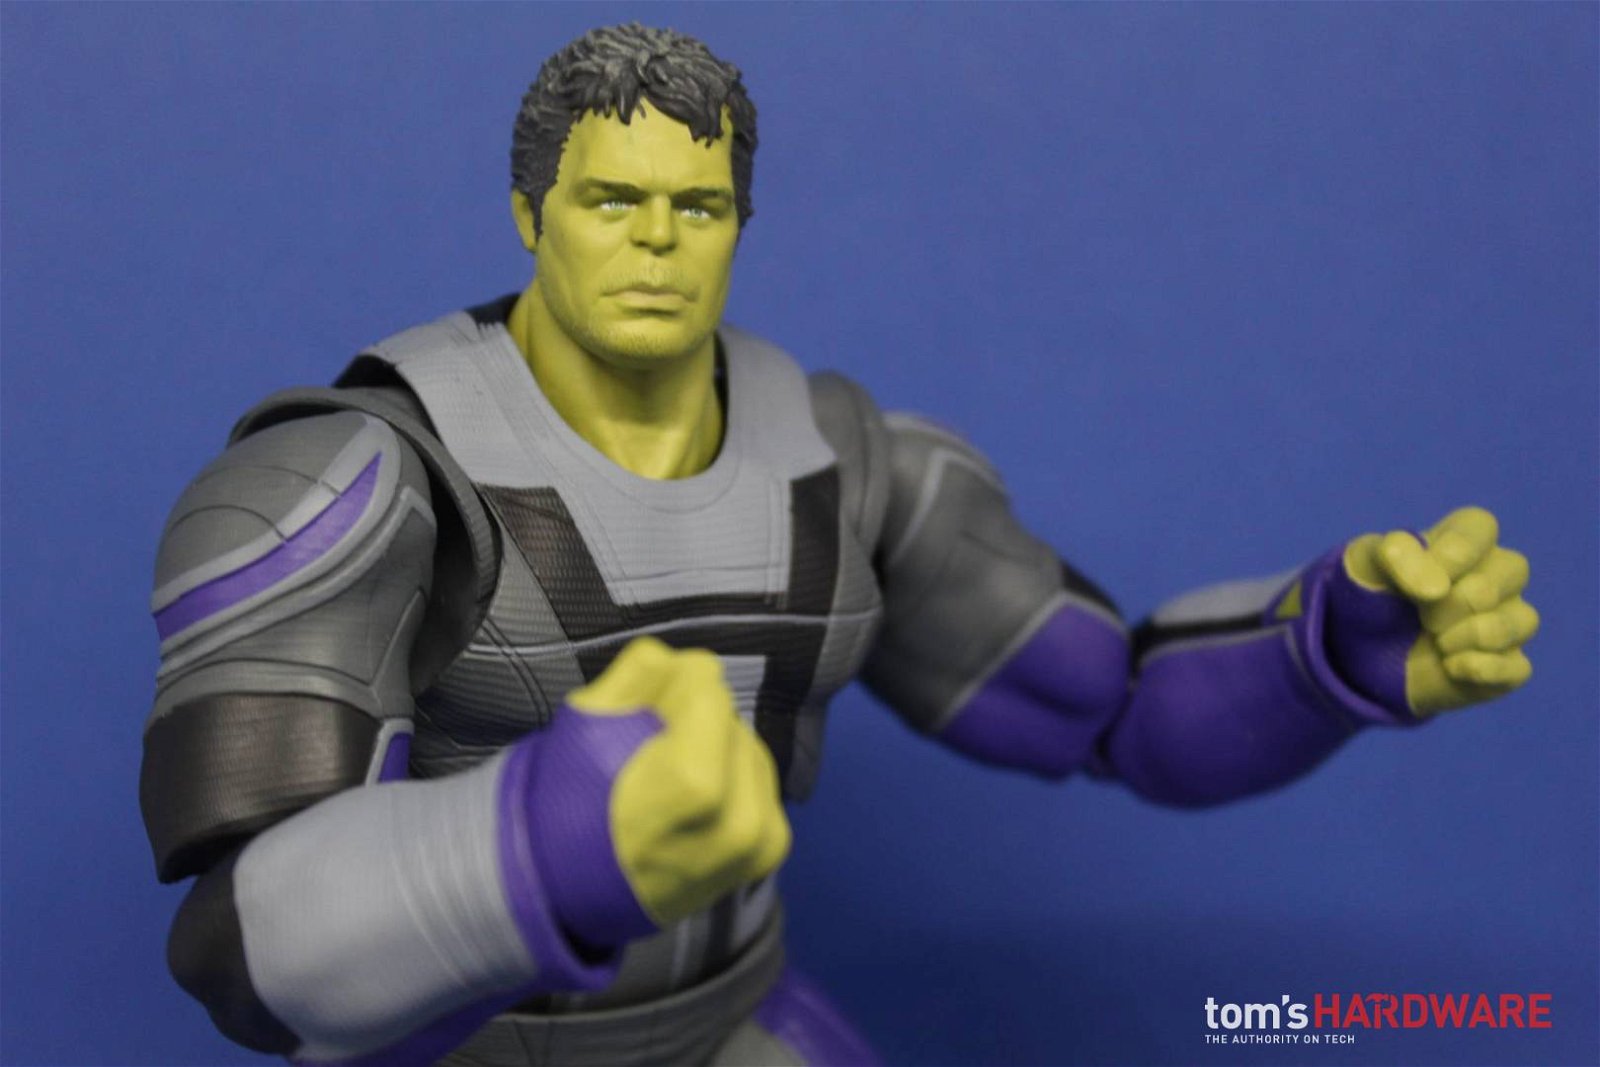 Immagine di Hulk (Avengers Endgame): la recensione